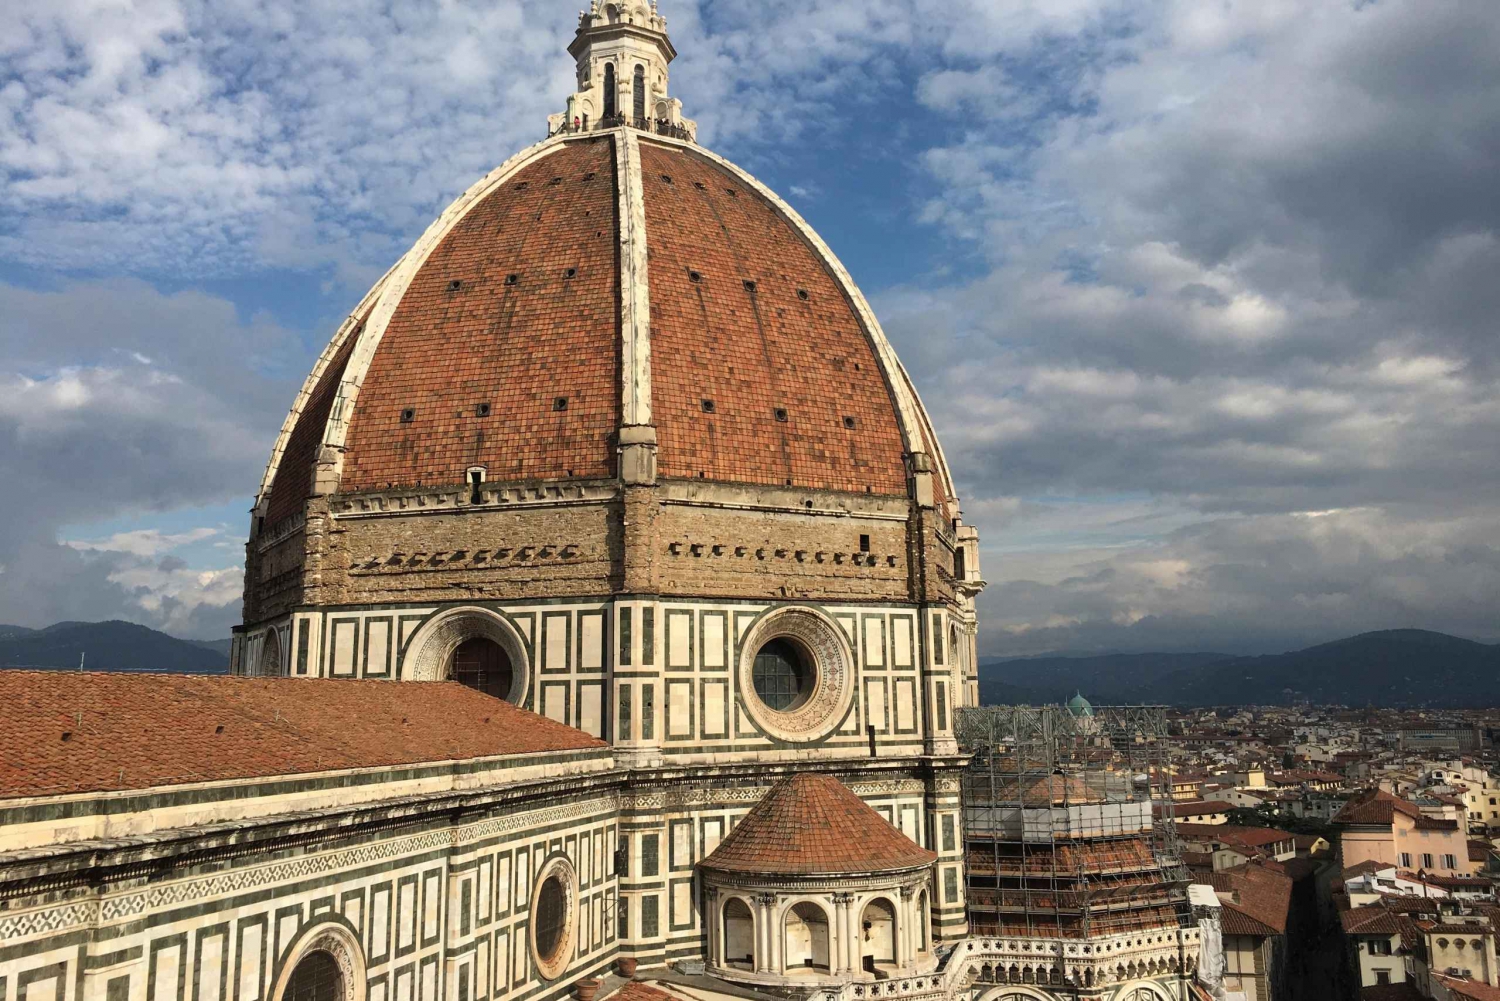 Visita guiada particular ao Domo de Brunelleschi Complexo